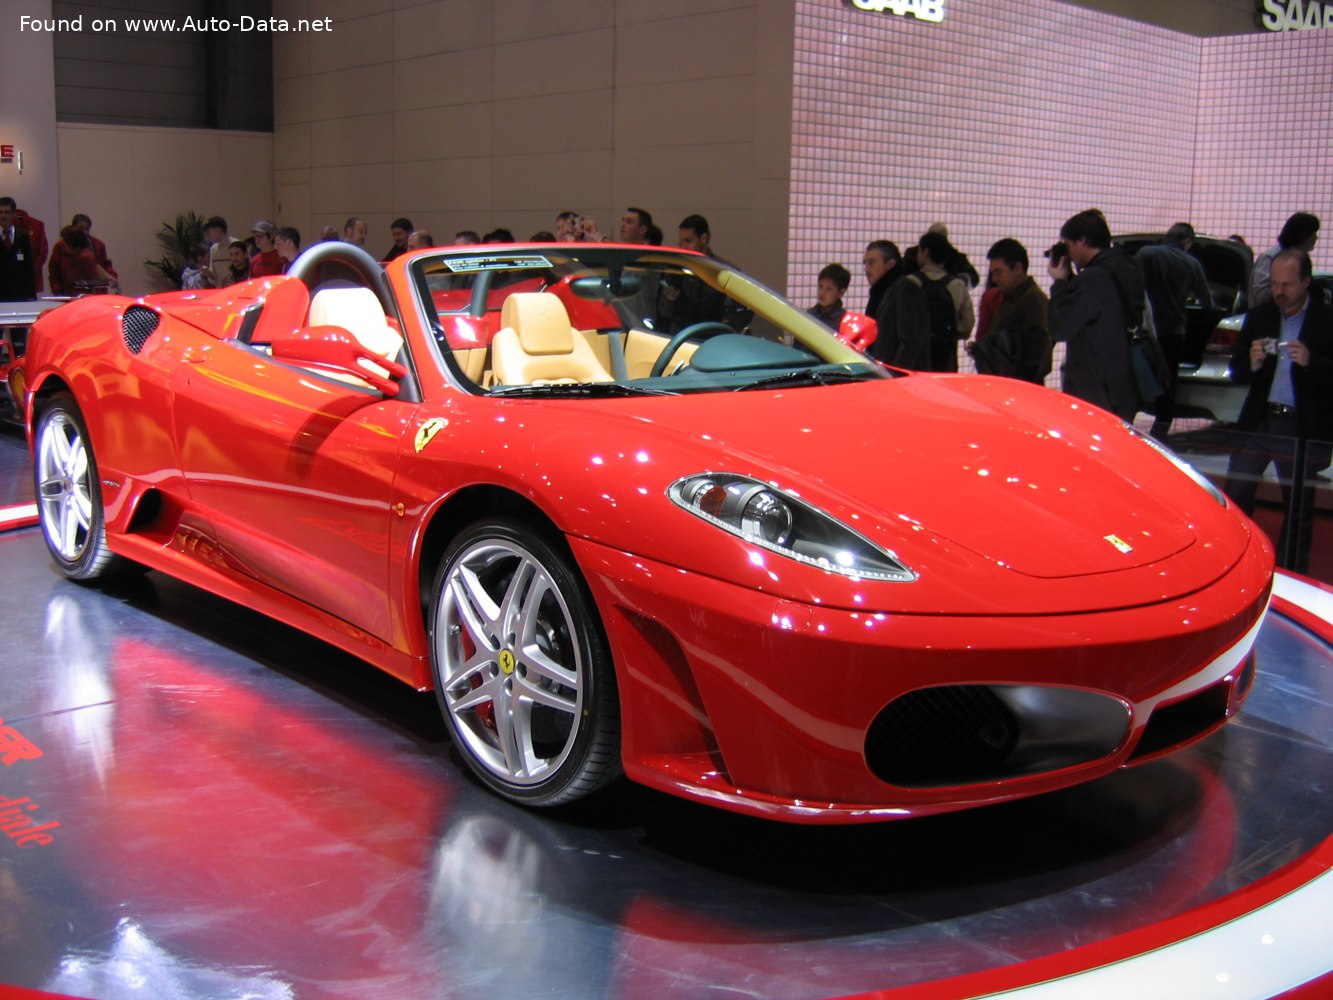 2005 Ferrari F430 Spider | Technical Specs, Fuel consumption, Dimensions